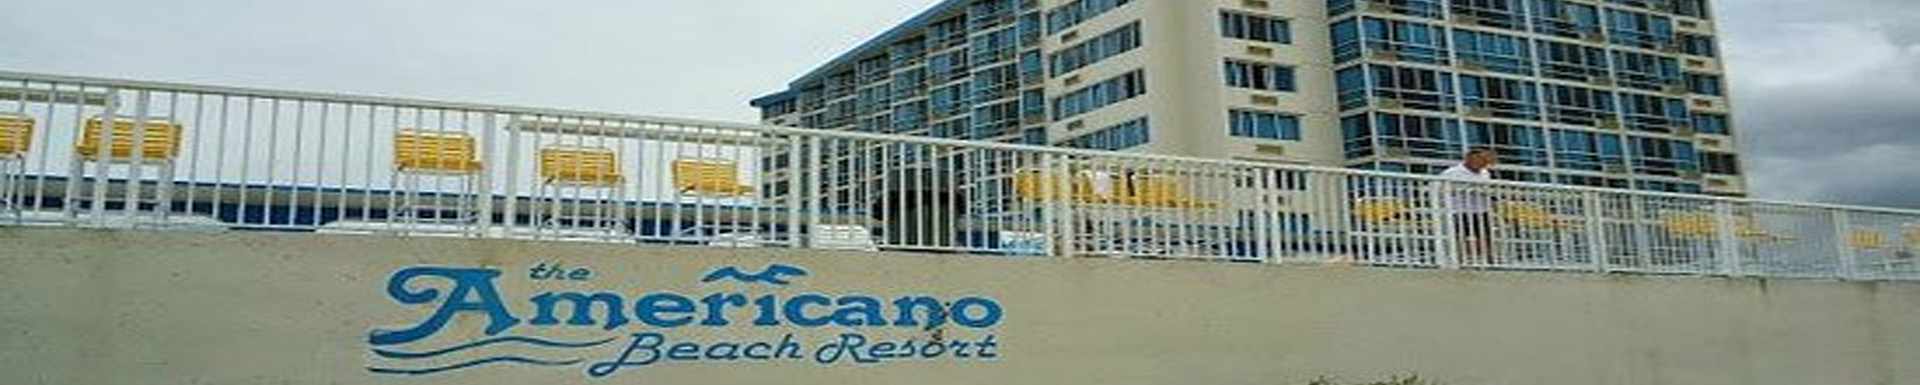 The Americano Beach Resort